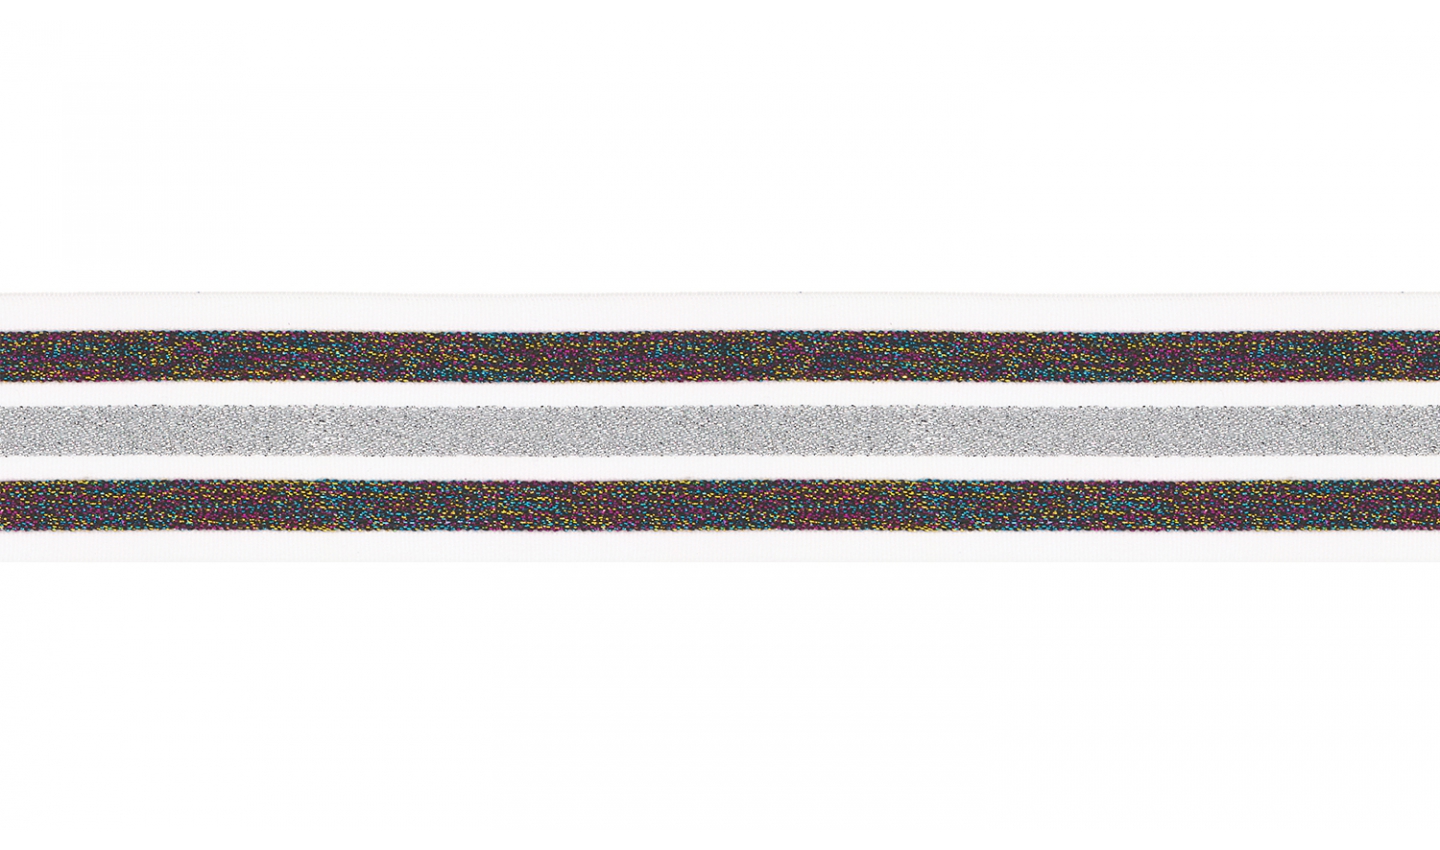 Gummiband 40mm offwhite/multicolor/silber gestreift LUREX  